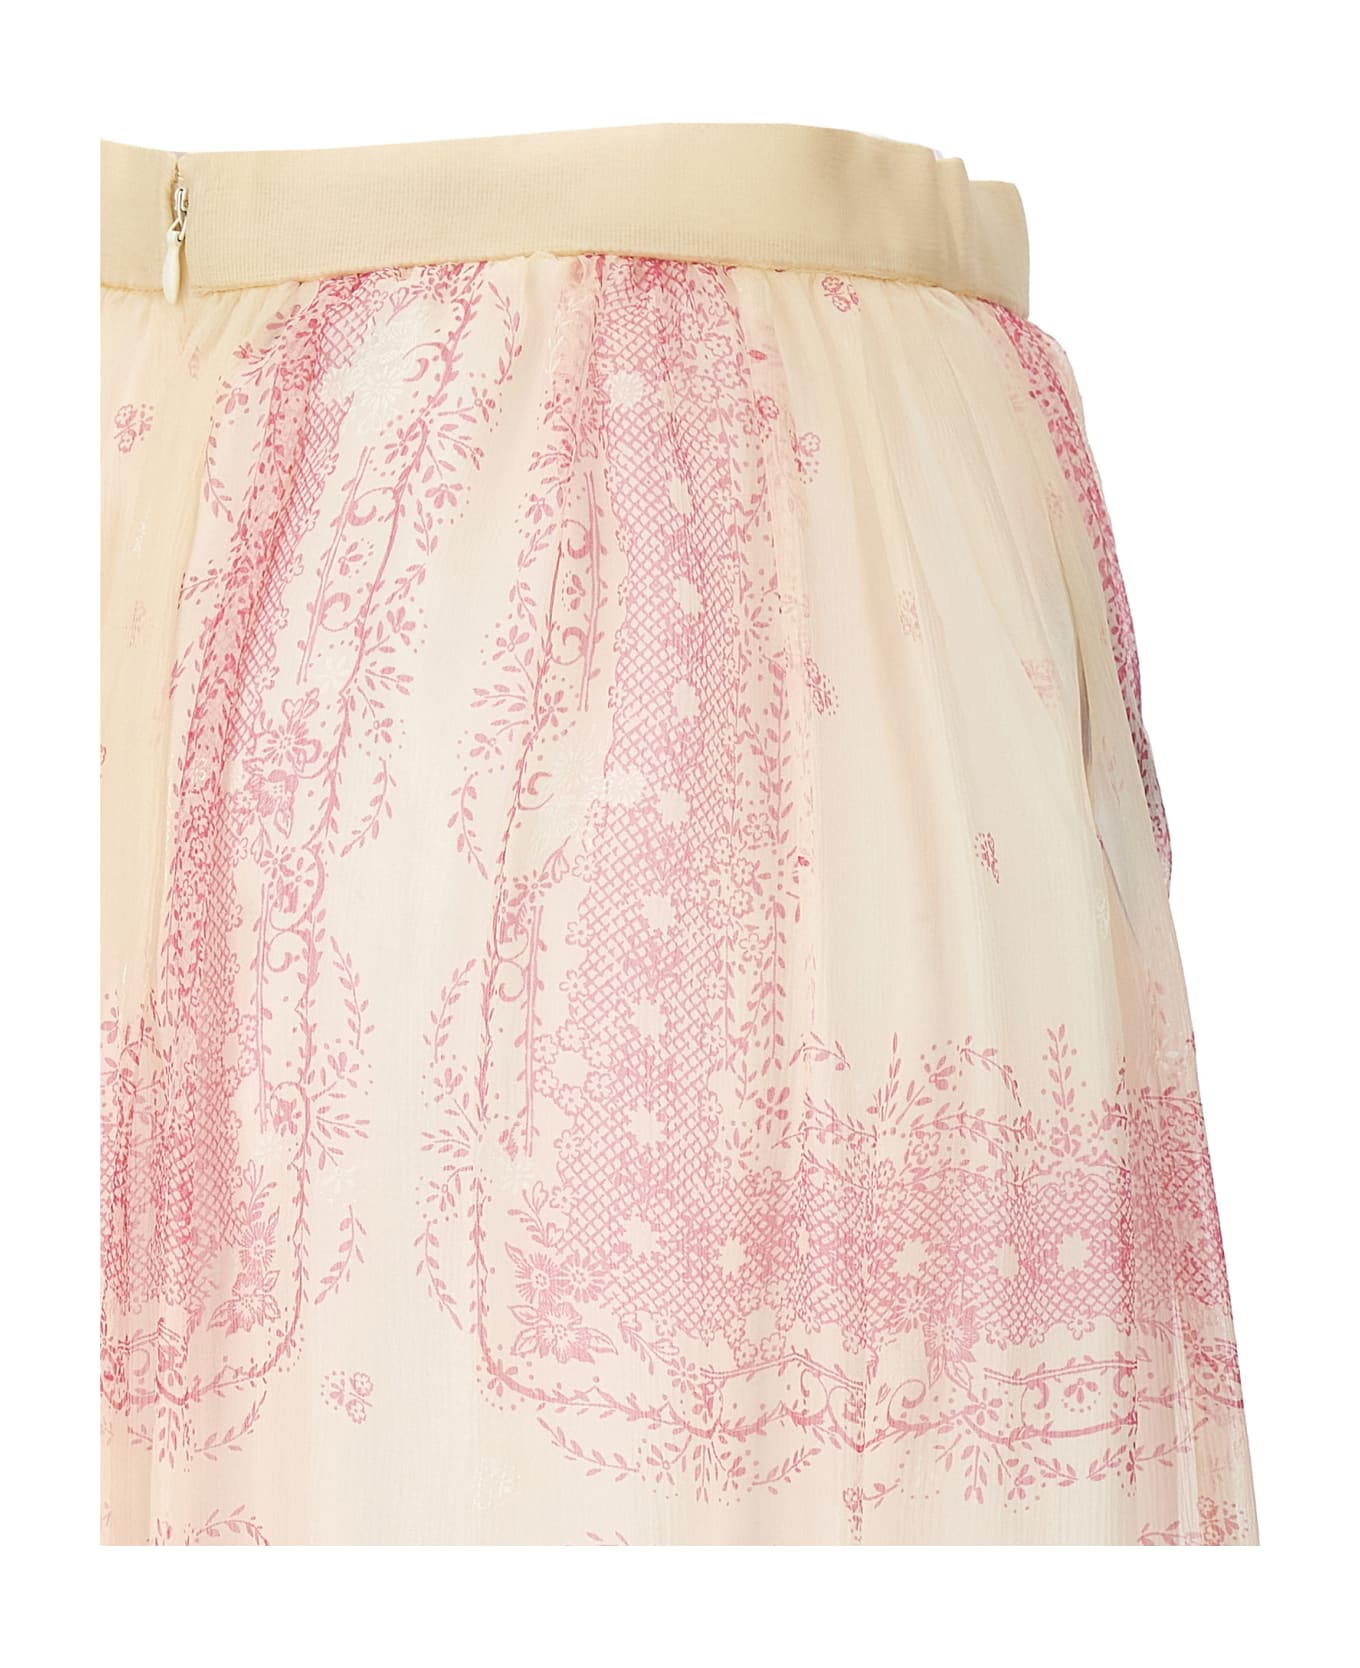 Philosophy di Lorenzo Serafini Printed Skirt - Pink スカート